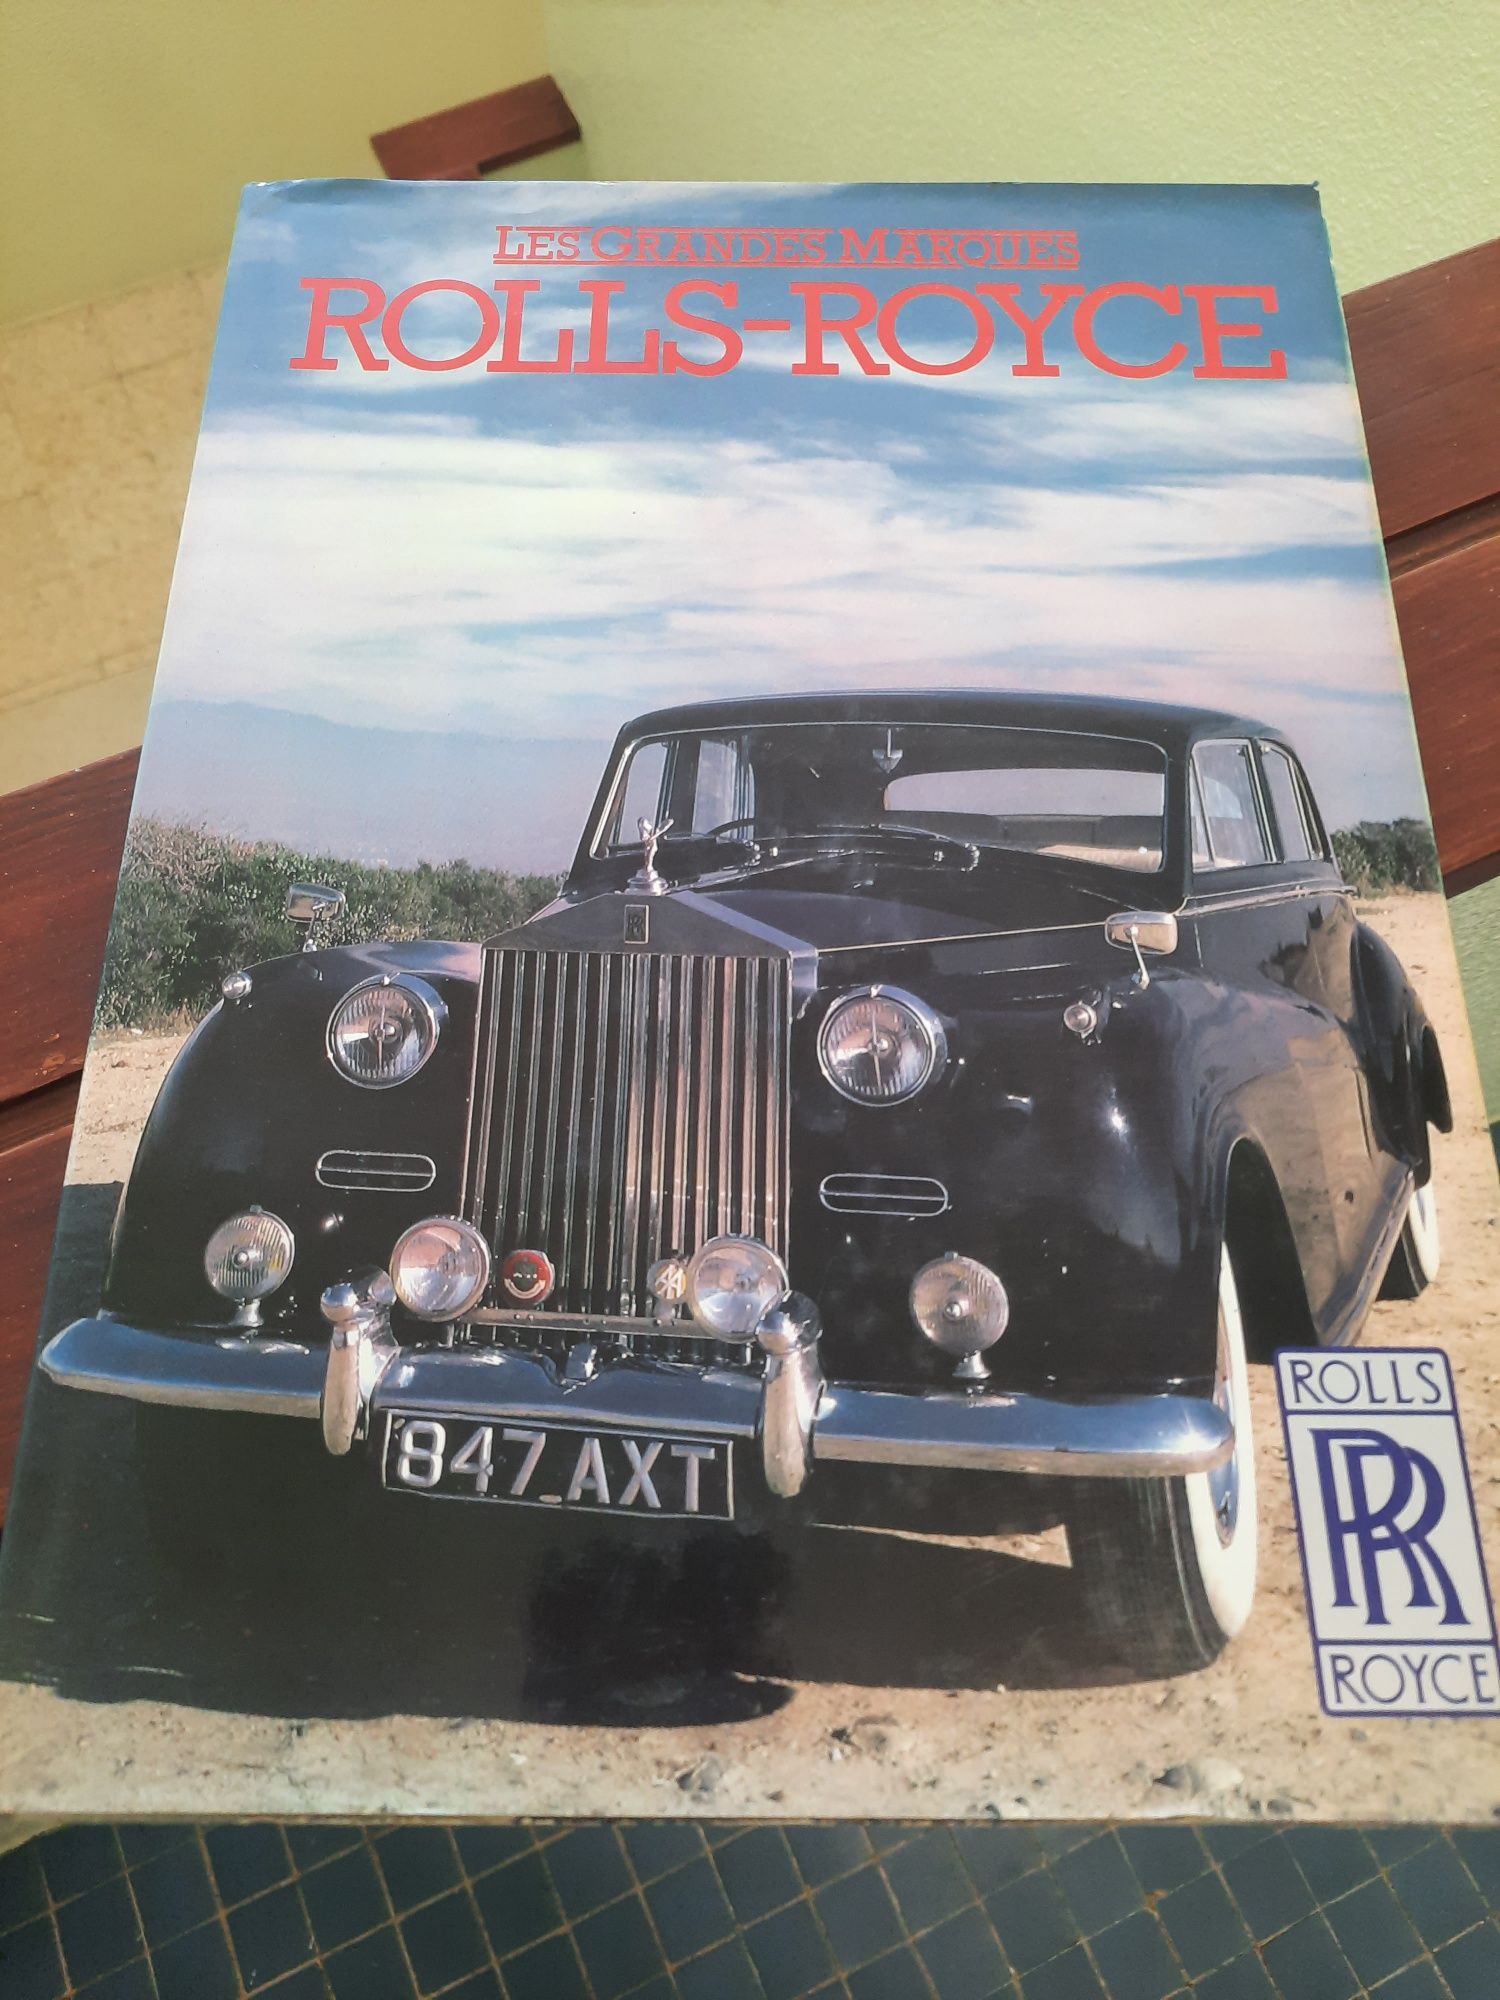 Rolls-Royce (Les grandes marques)